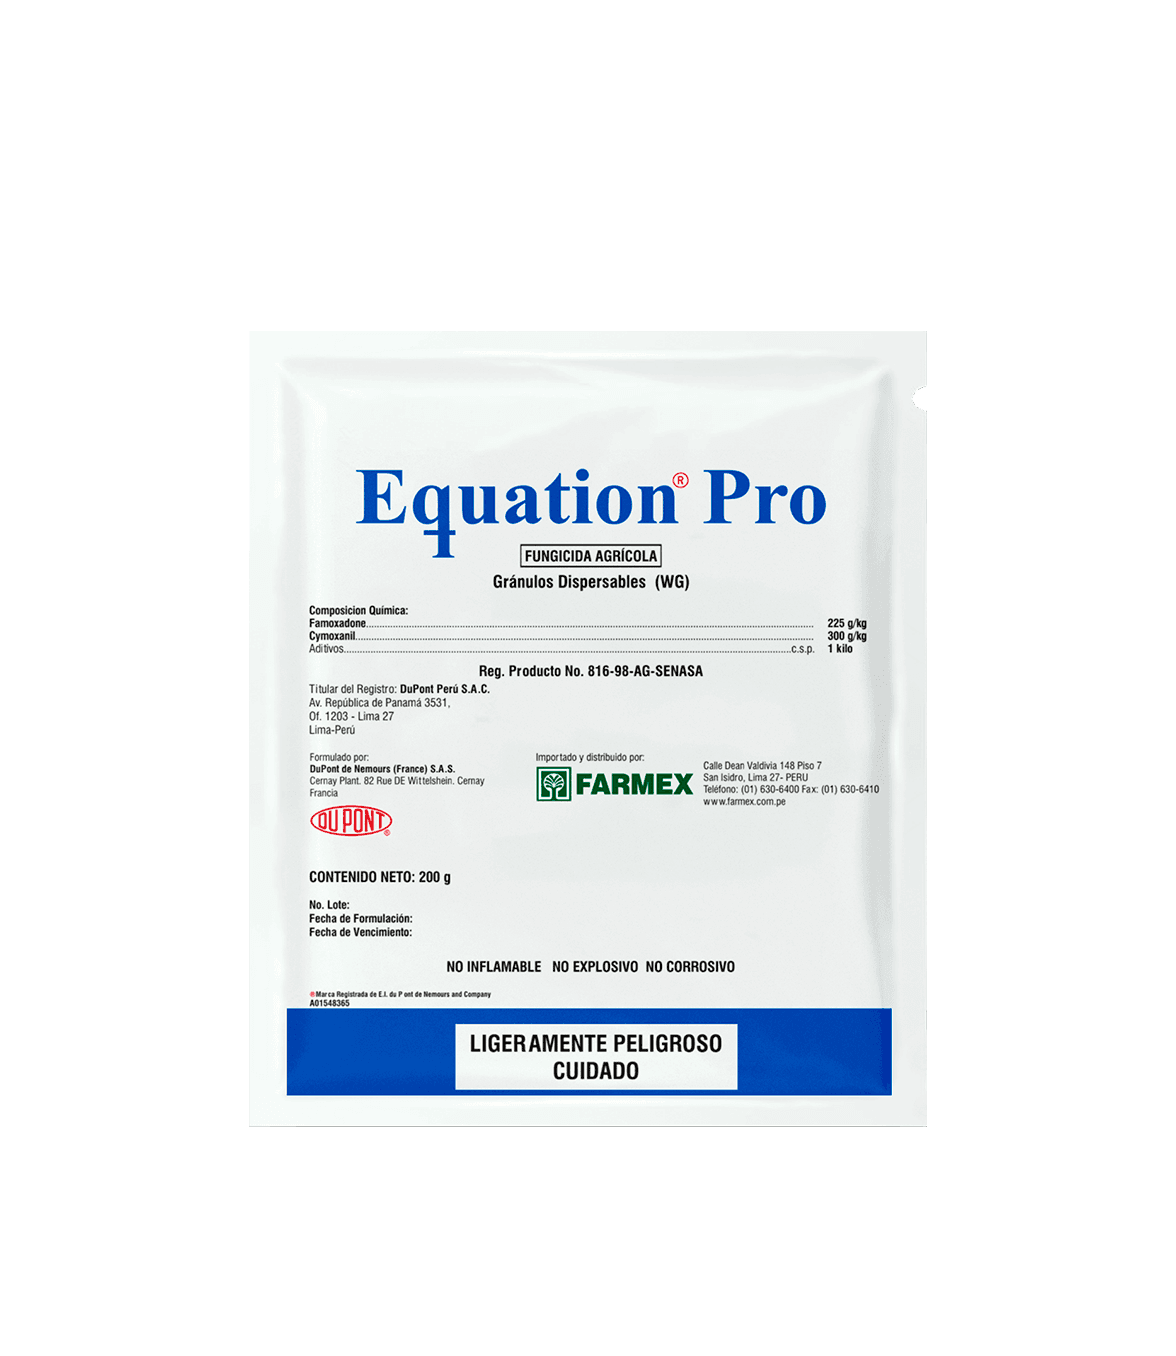 Equation Pro